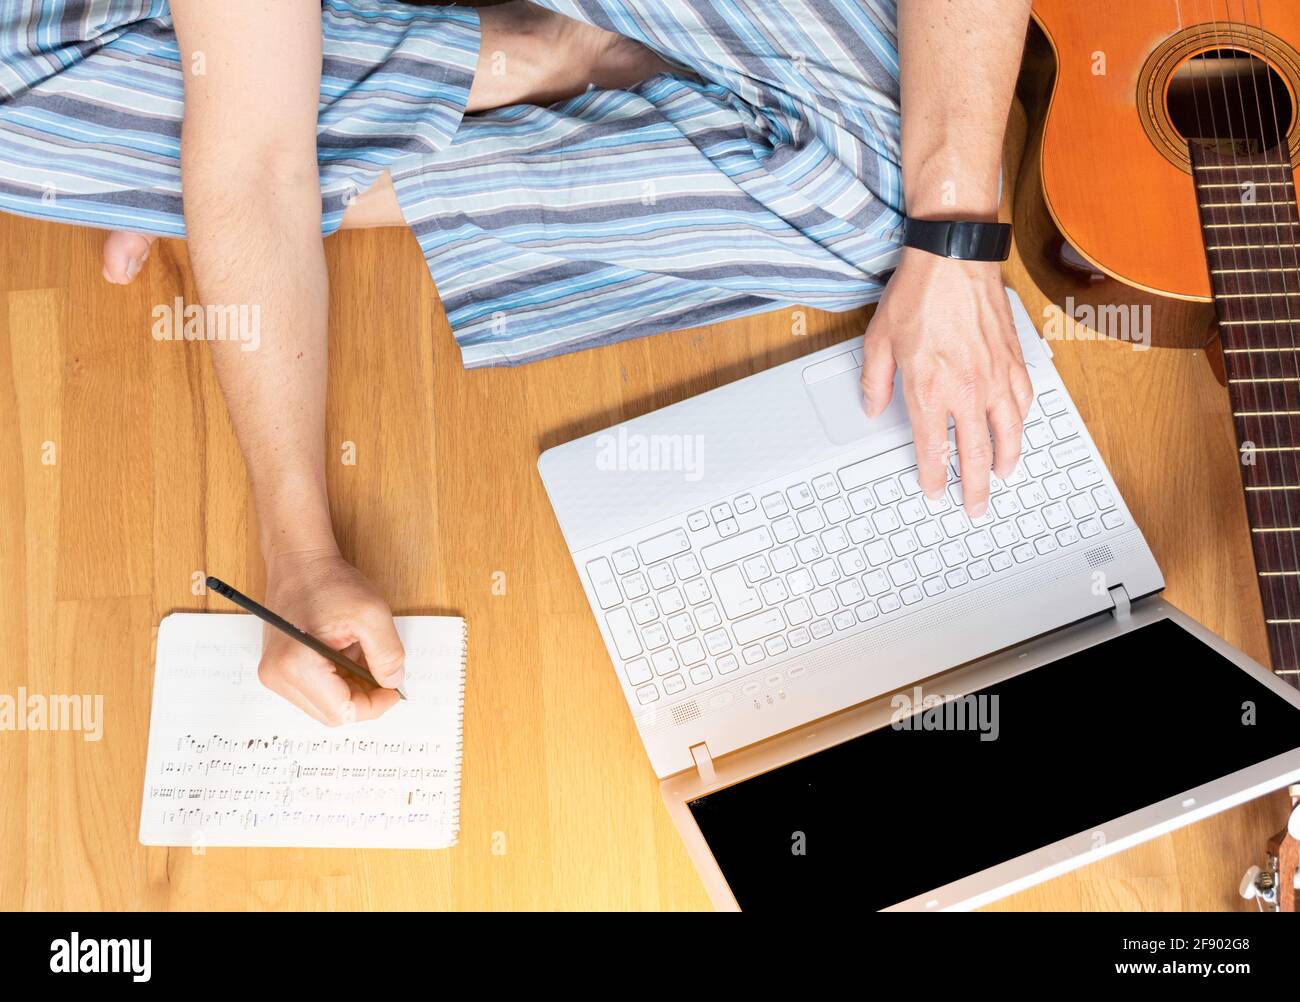 L'homme consulte son ordinateur portable et prend des notes. Il est assis sur le plancher en apprenant à jouer de la guitare. Banque D'Images